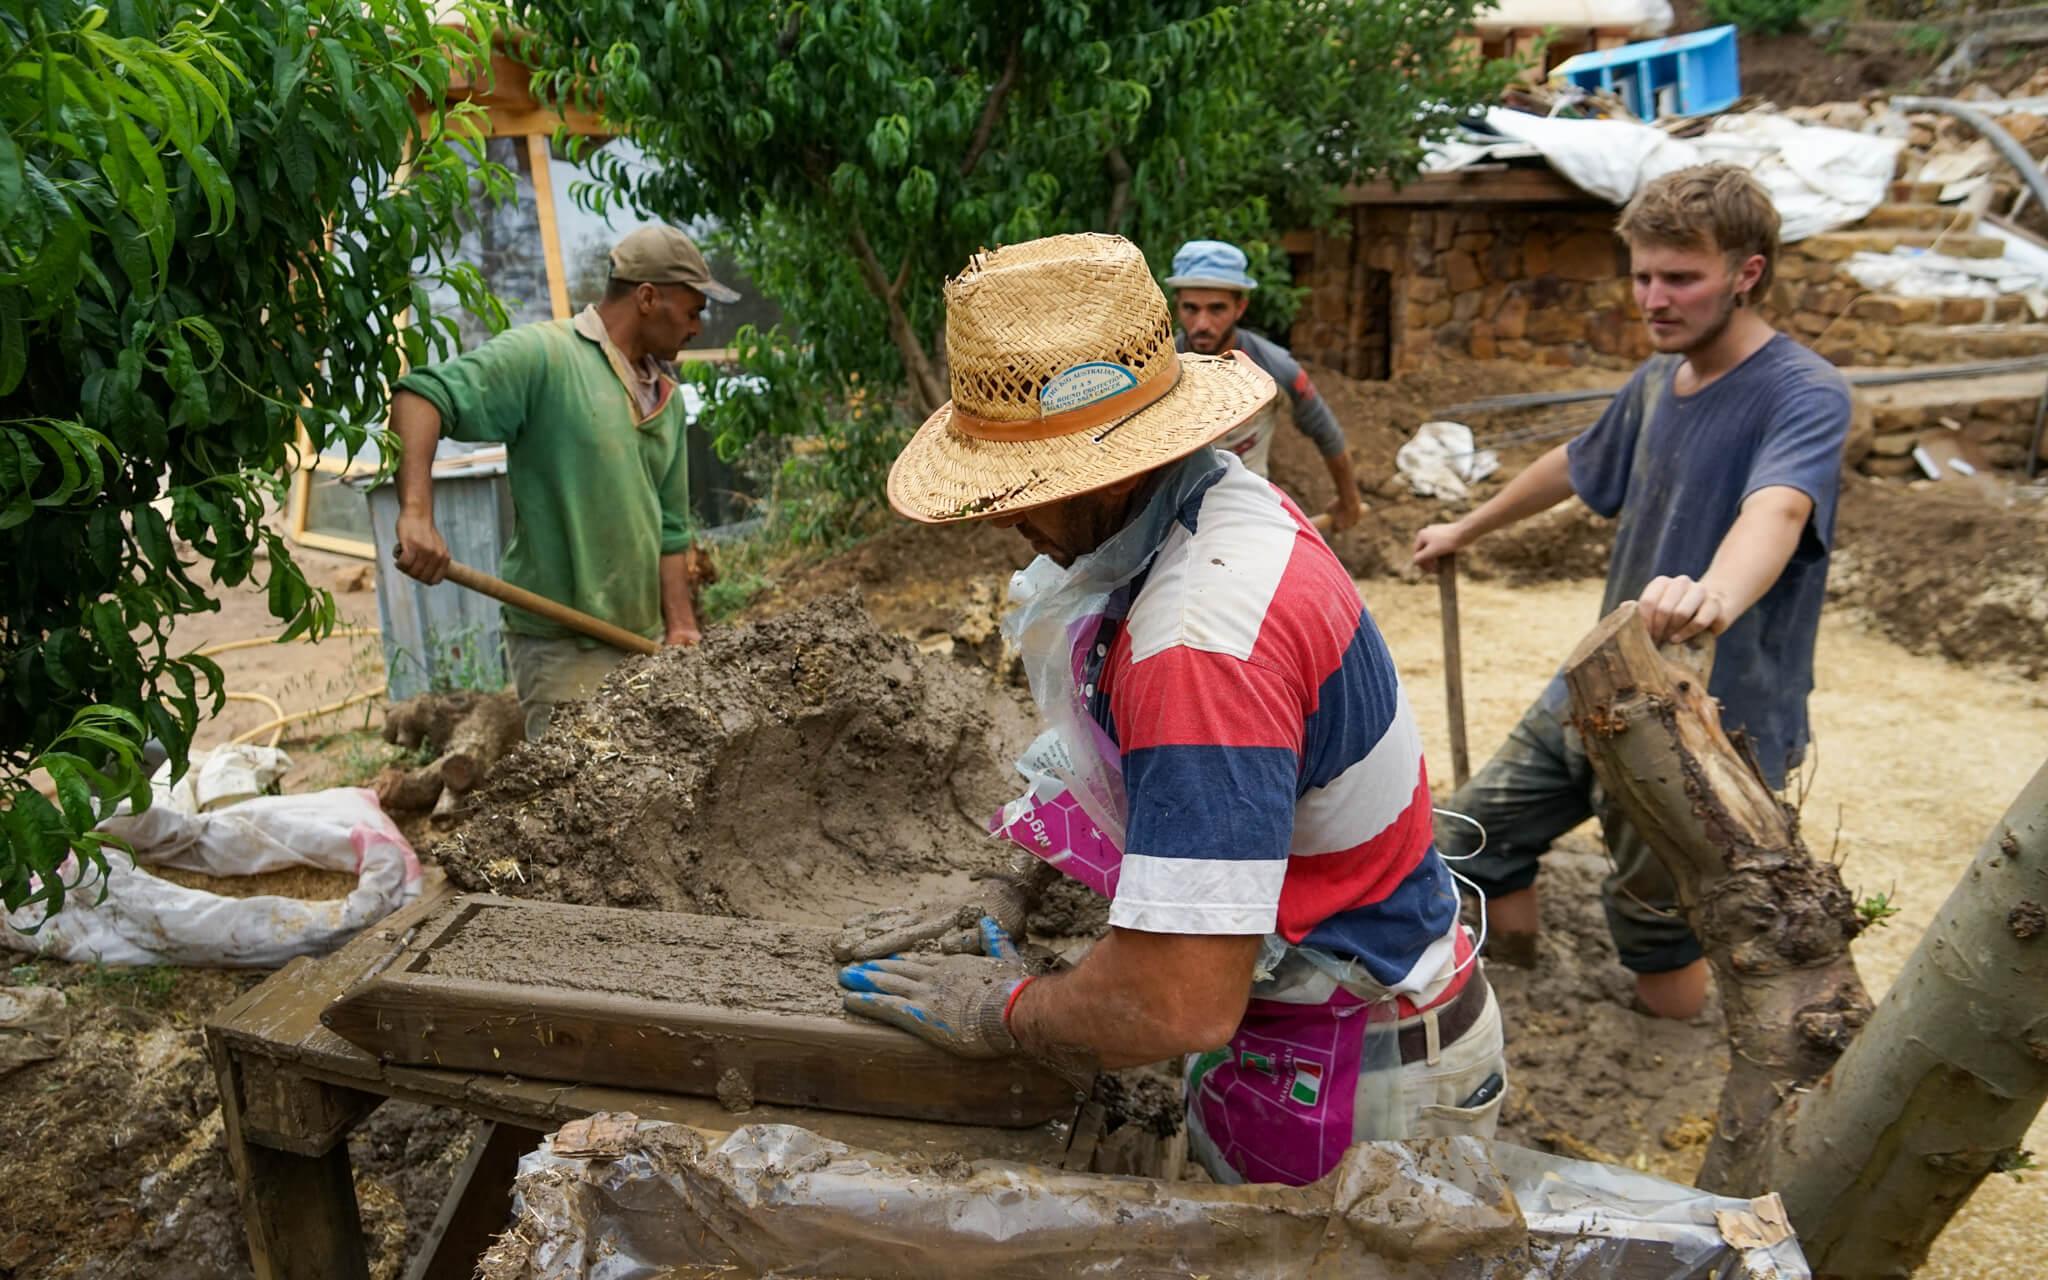 العمال وهم يبنون بيت الأحلام من الطين والحجر ومواد معاد تدويرها.
المصدر: لايف هاوس